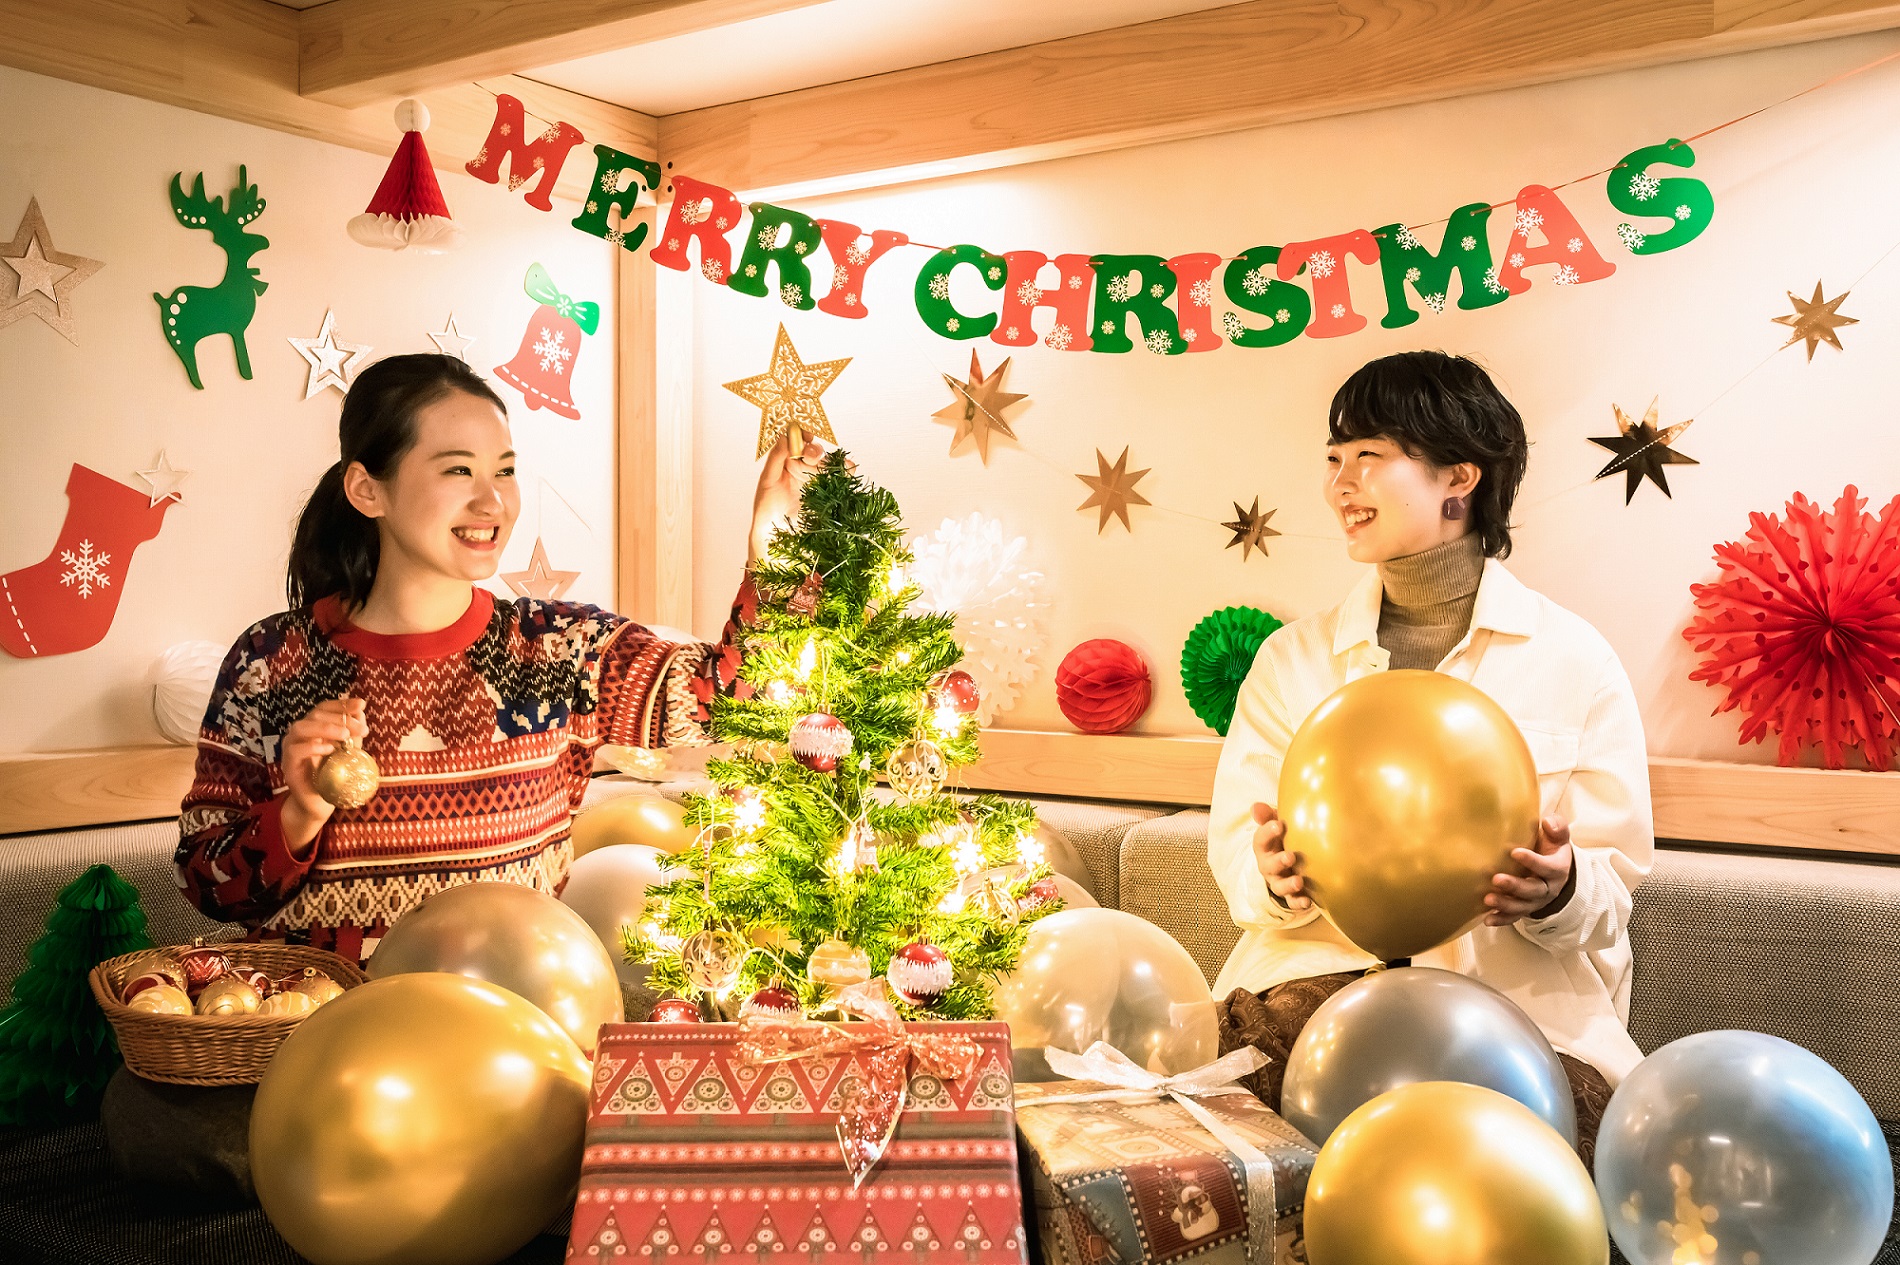 星野リゾート Beb5軽井沢 大人数では無理でも クリスマスパーティーを楽しみたい Bebのこっそり満喫クリスマスステイ 期間 年12月1日 25日 Newscast